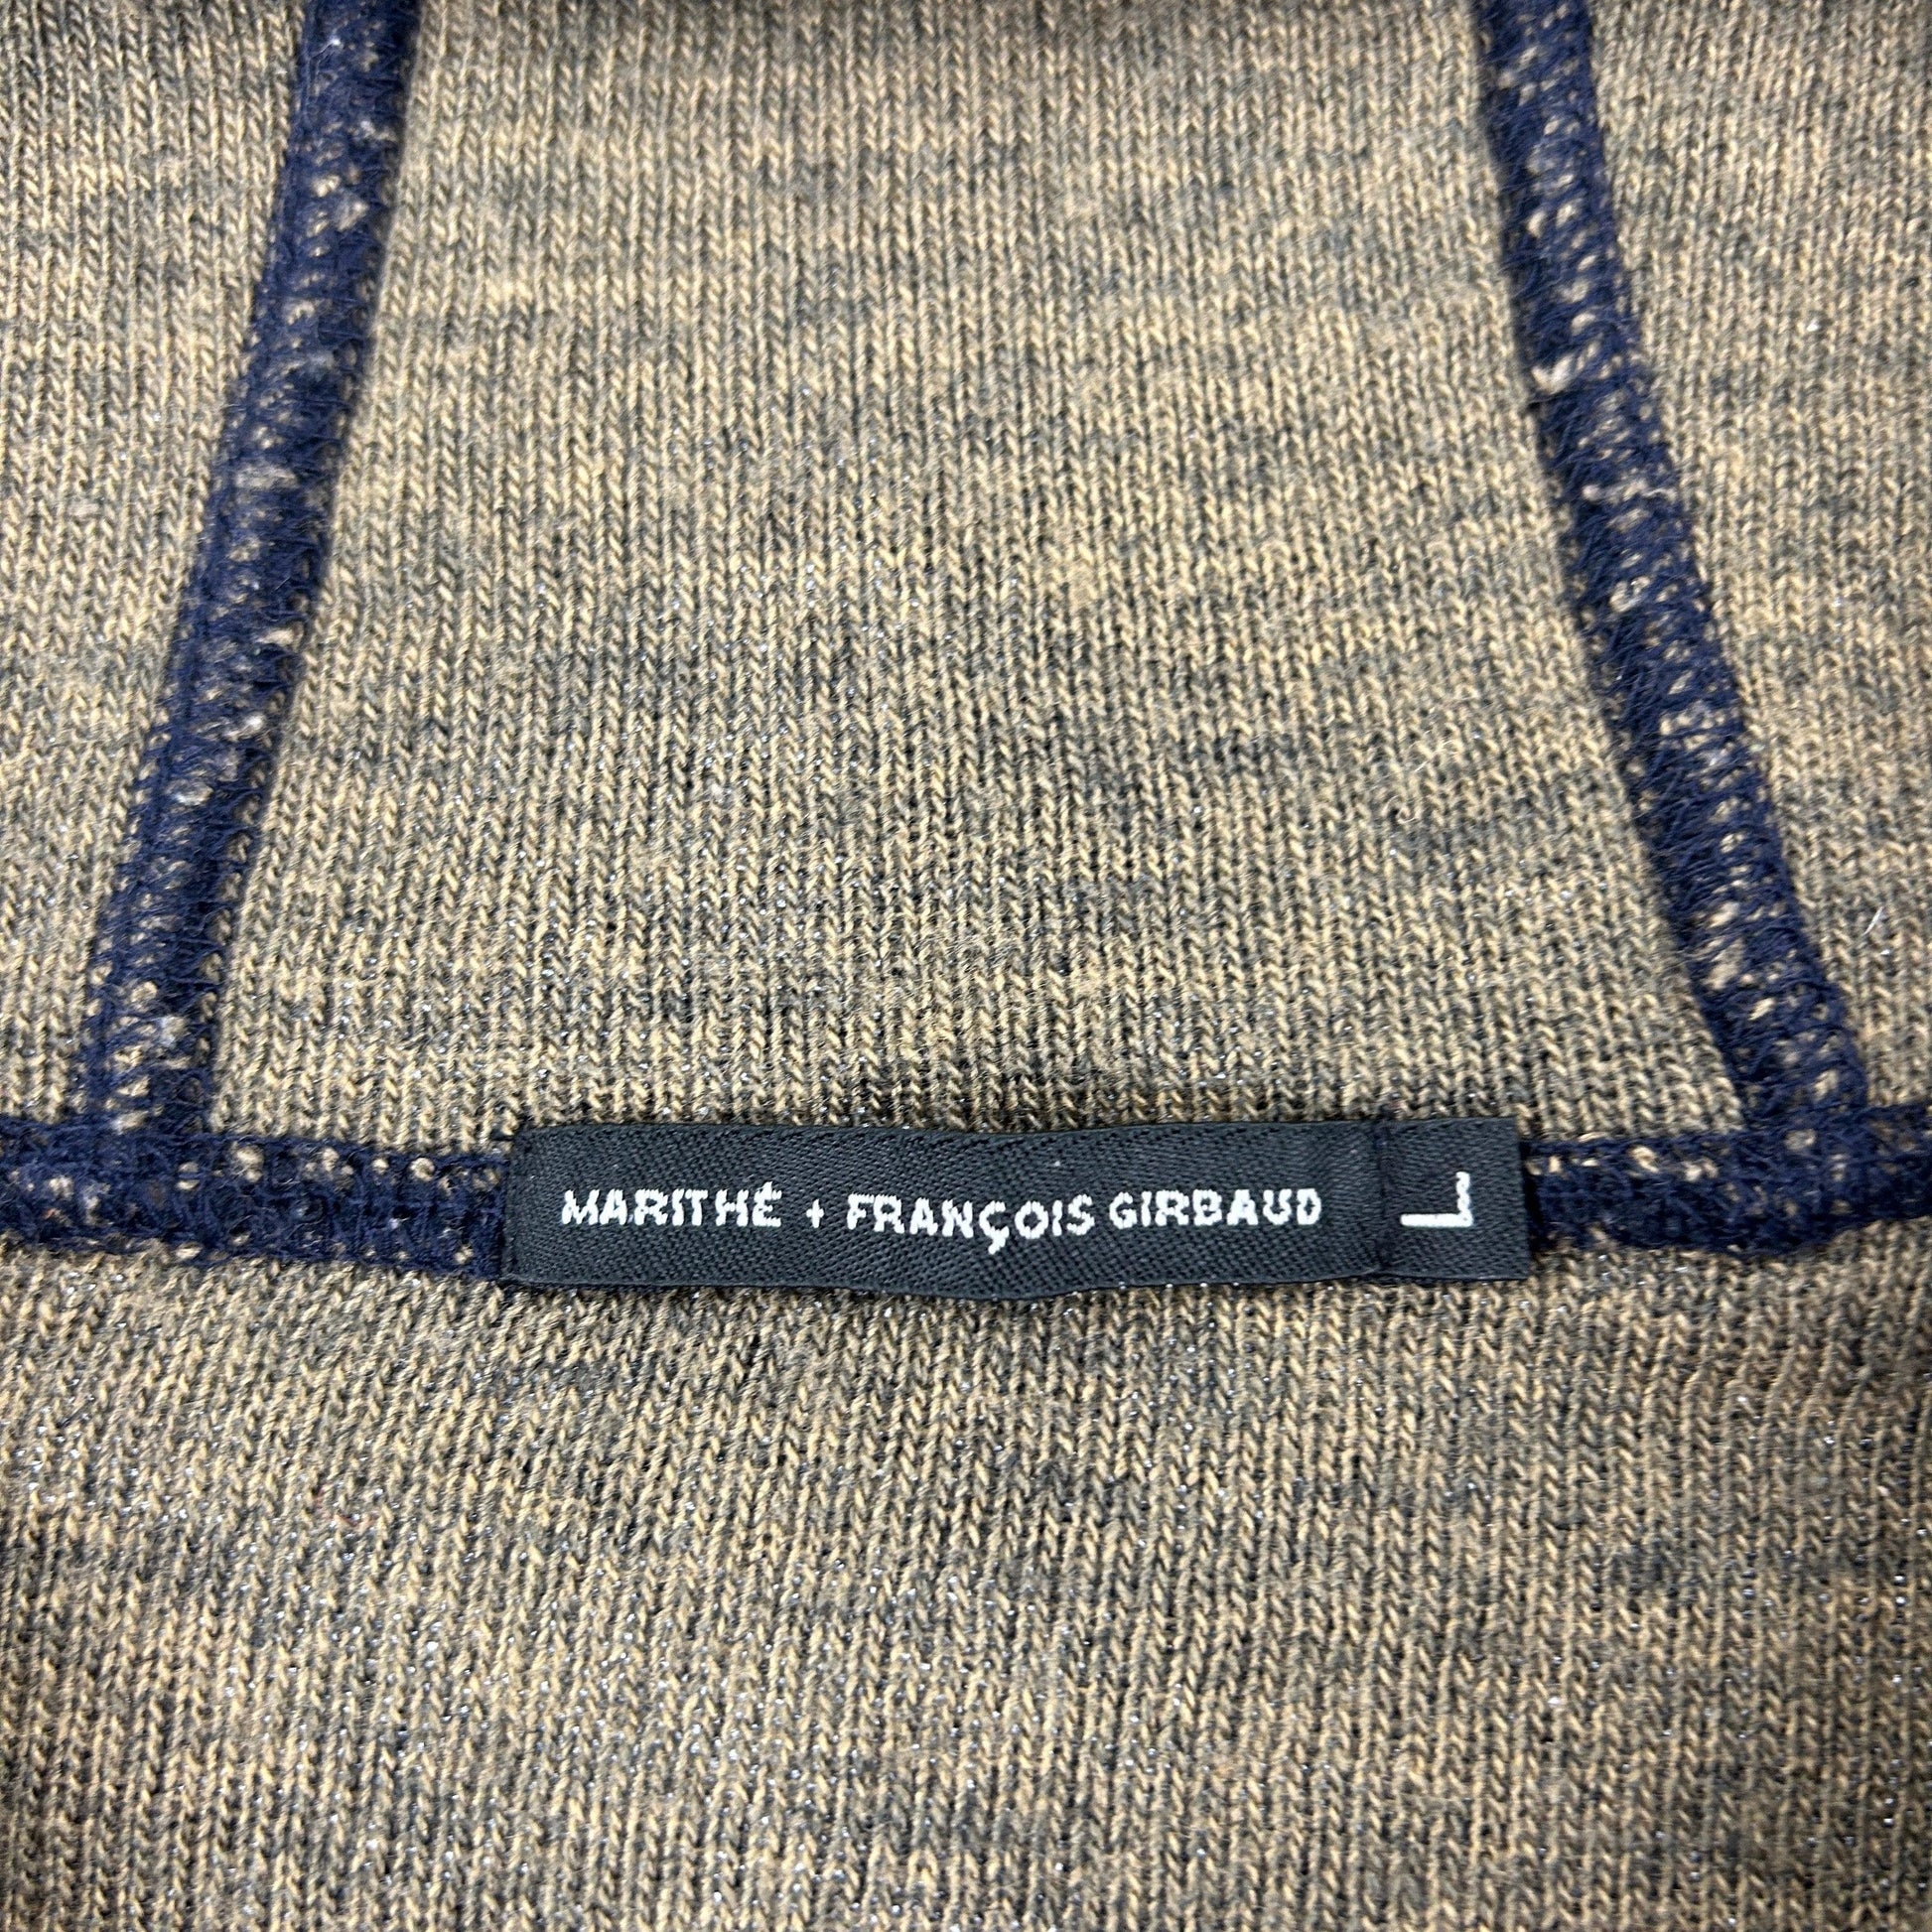 Vintage Marithé + François Girbaud Jacket Size M - Known Source